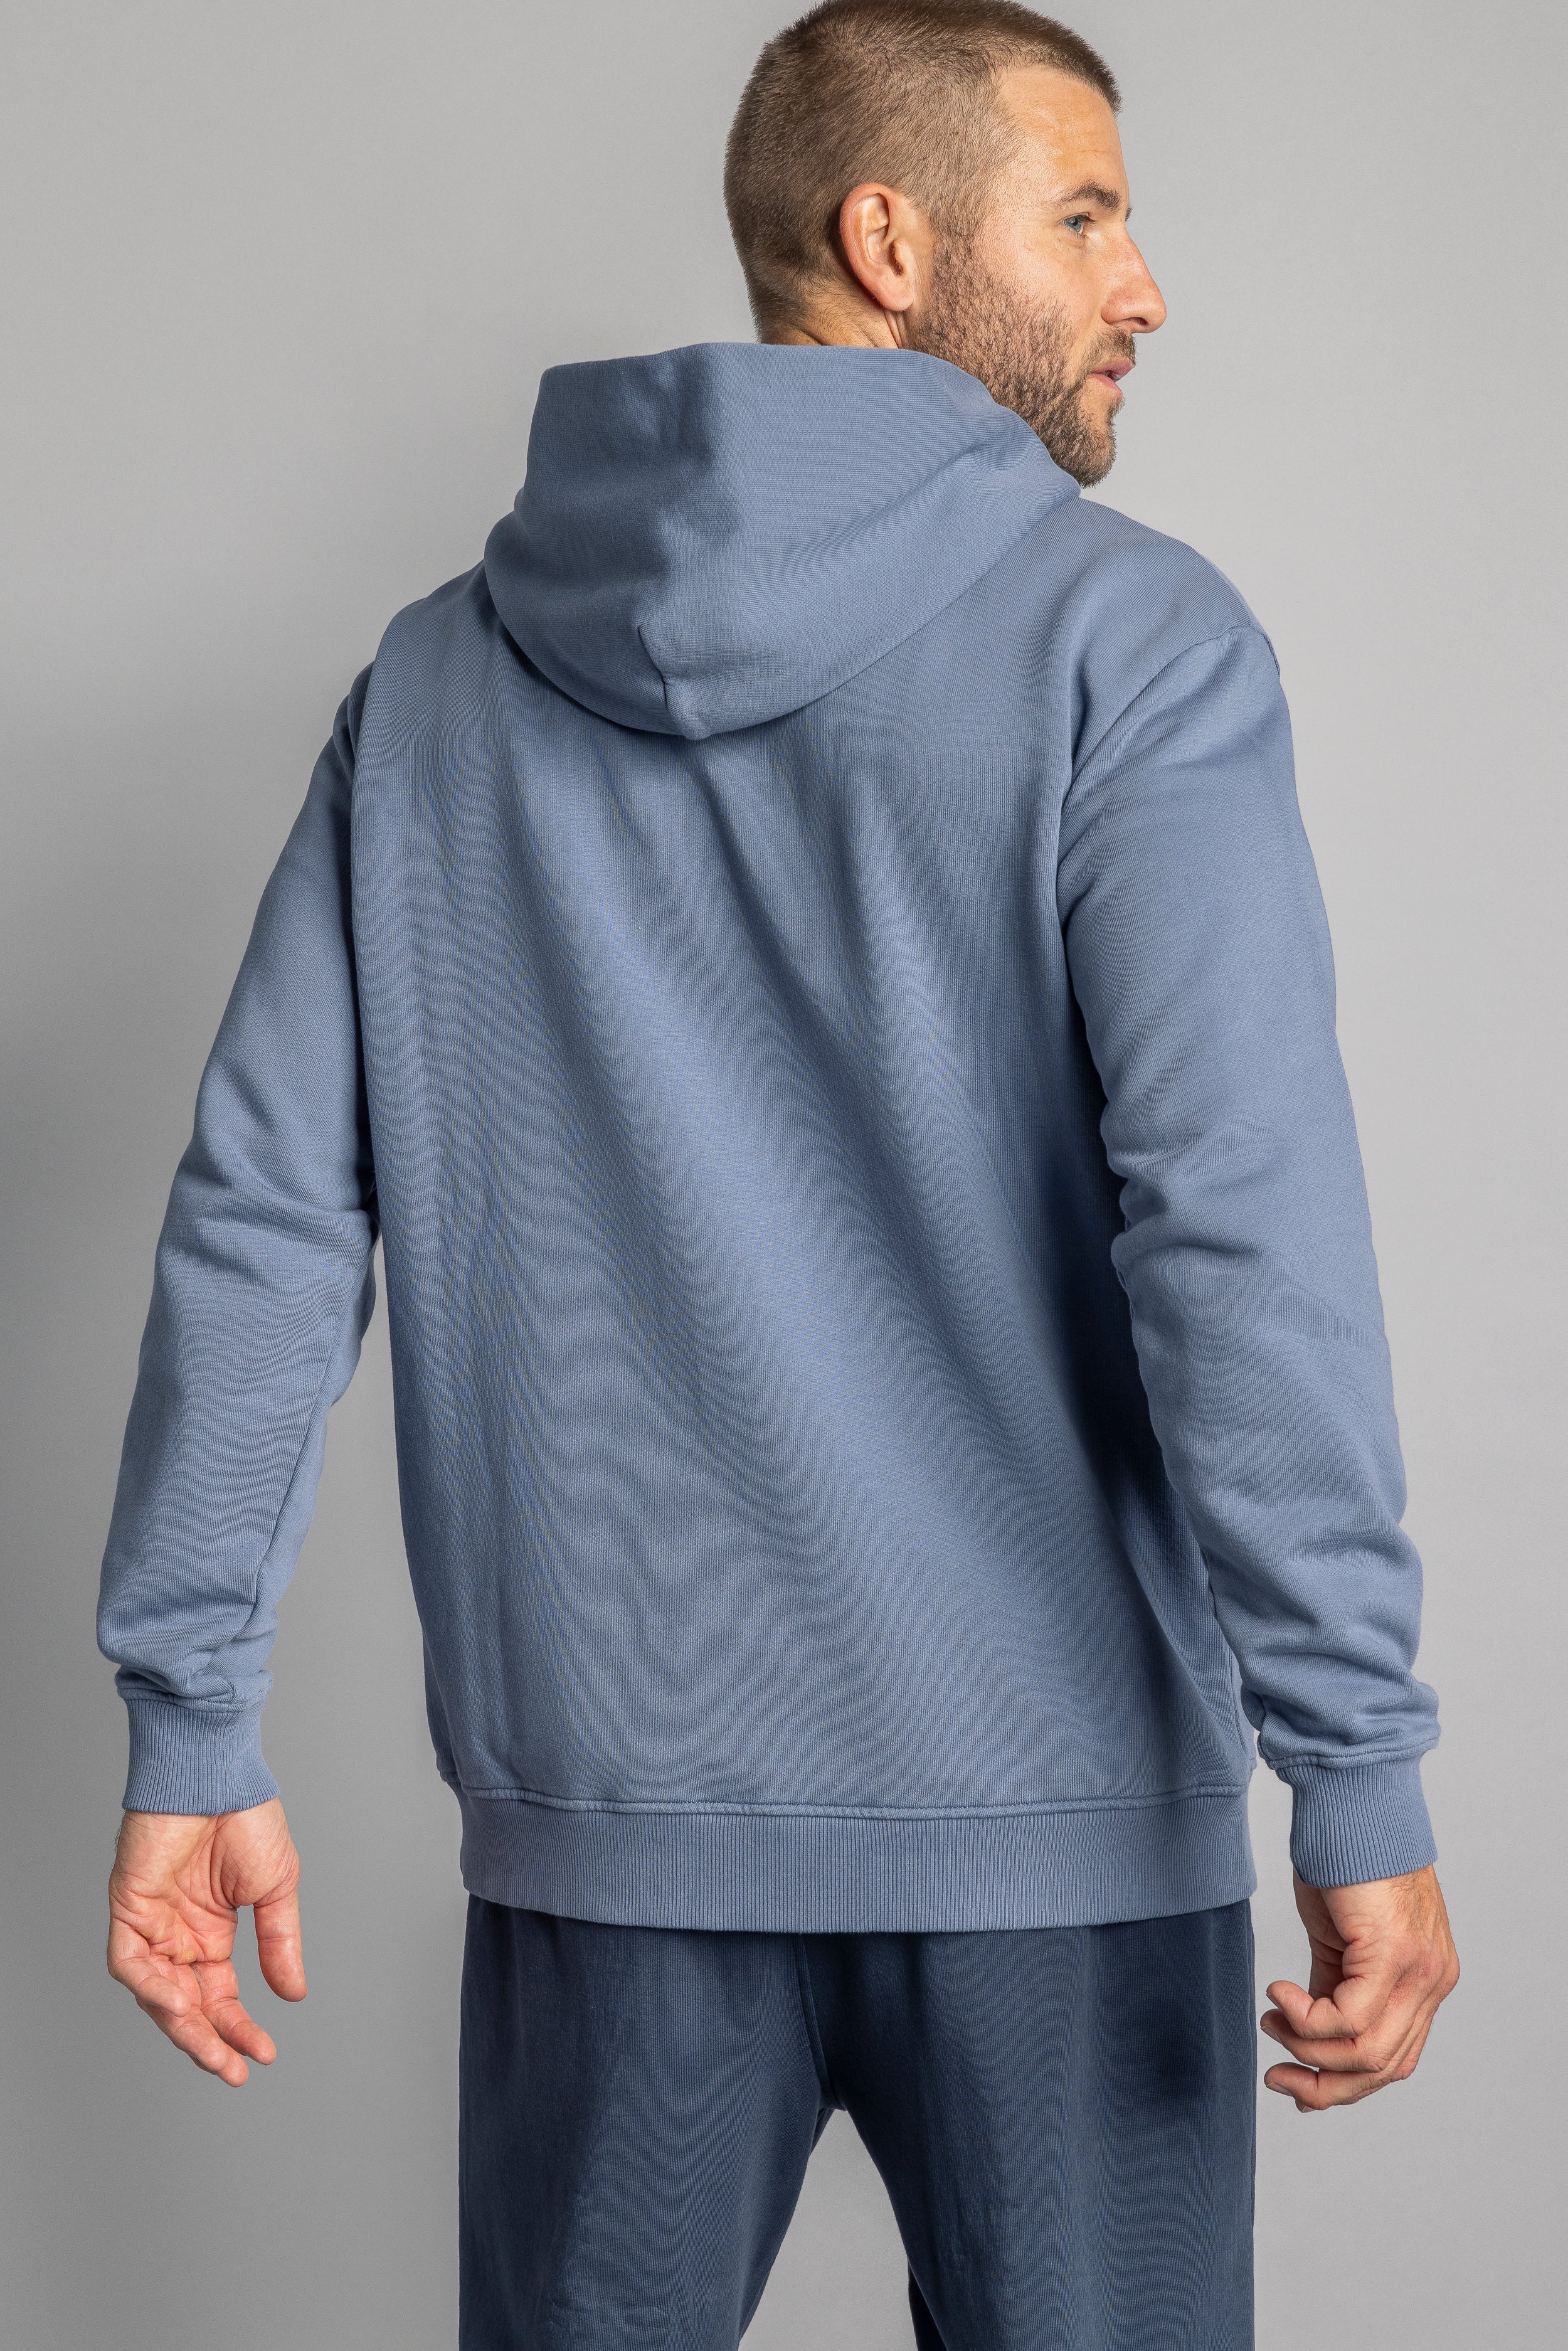 Blauer Hoodie Premium Blank aus 100% Bio-Baumwolle von DIRTS